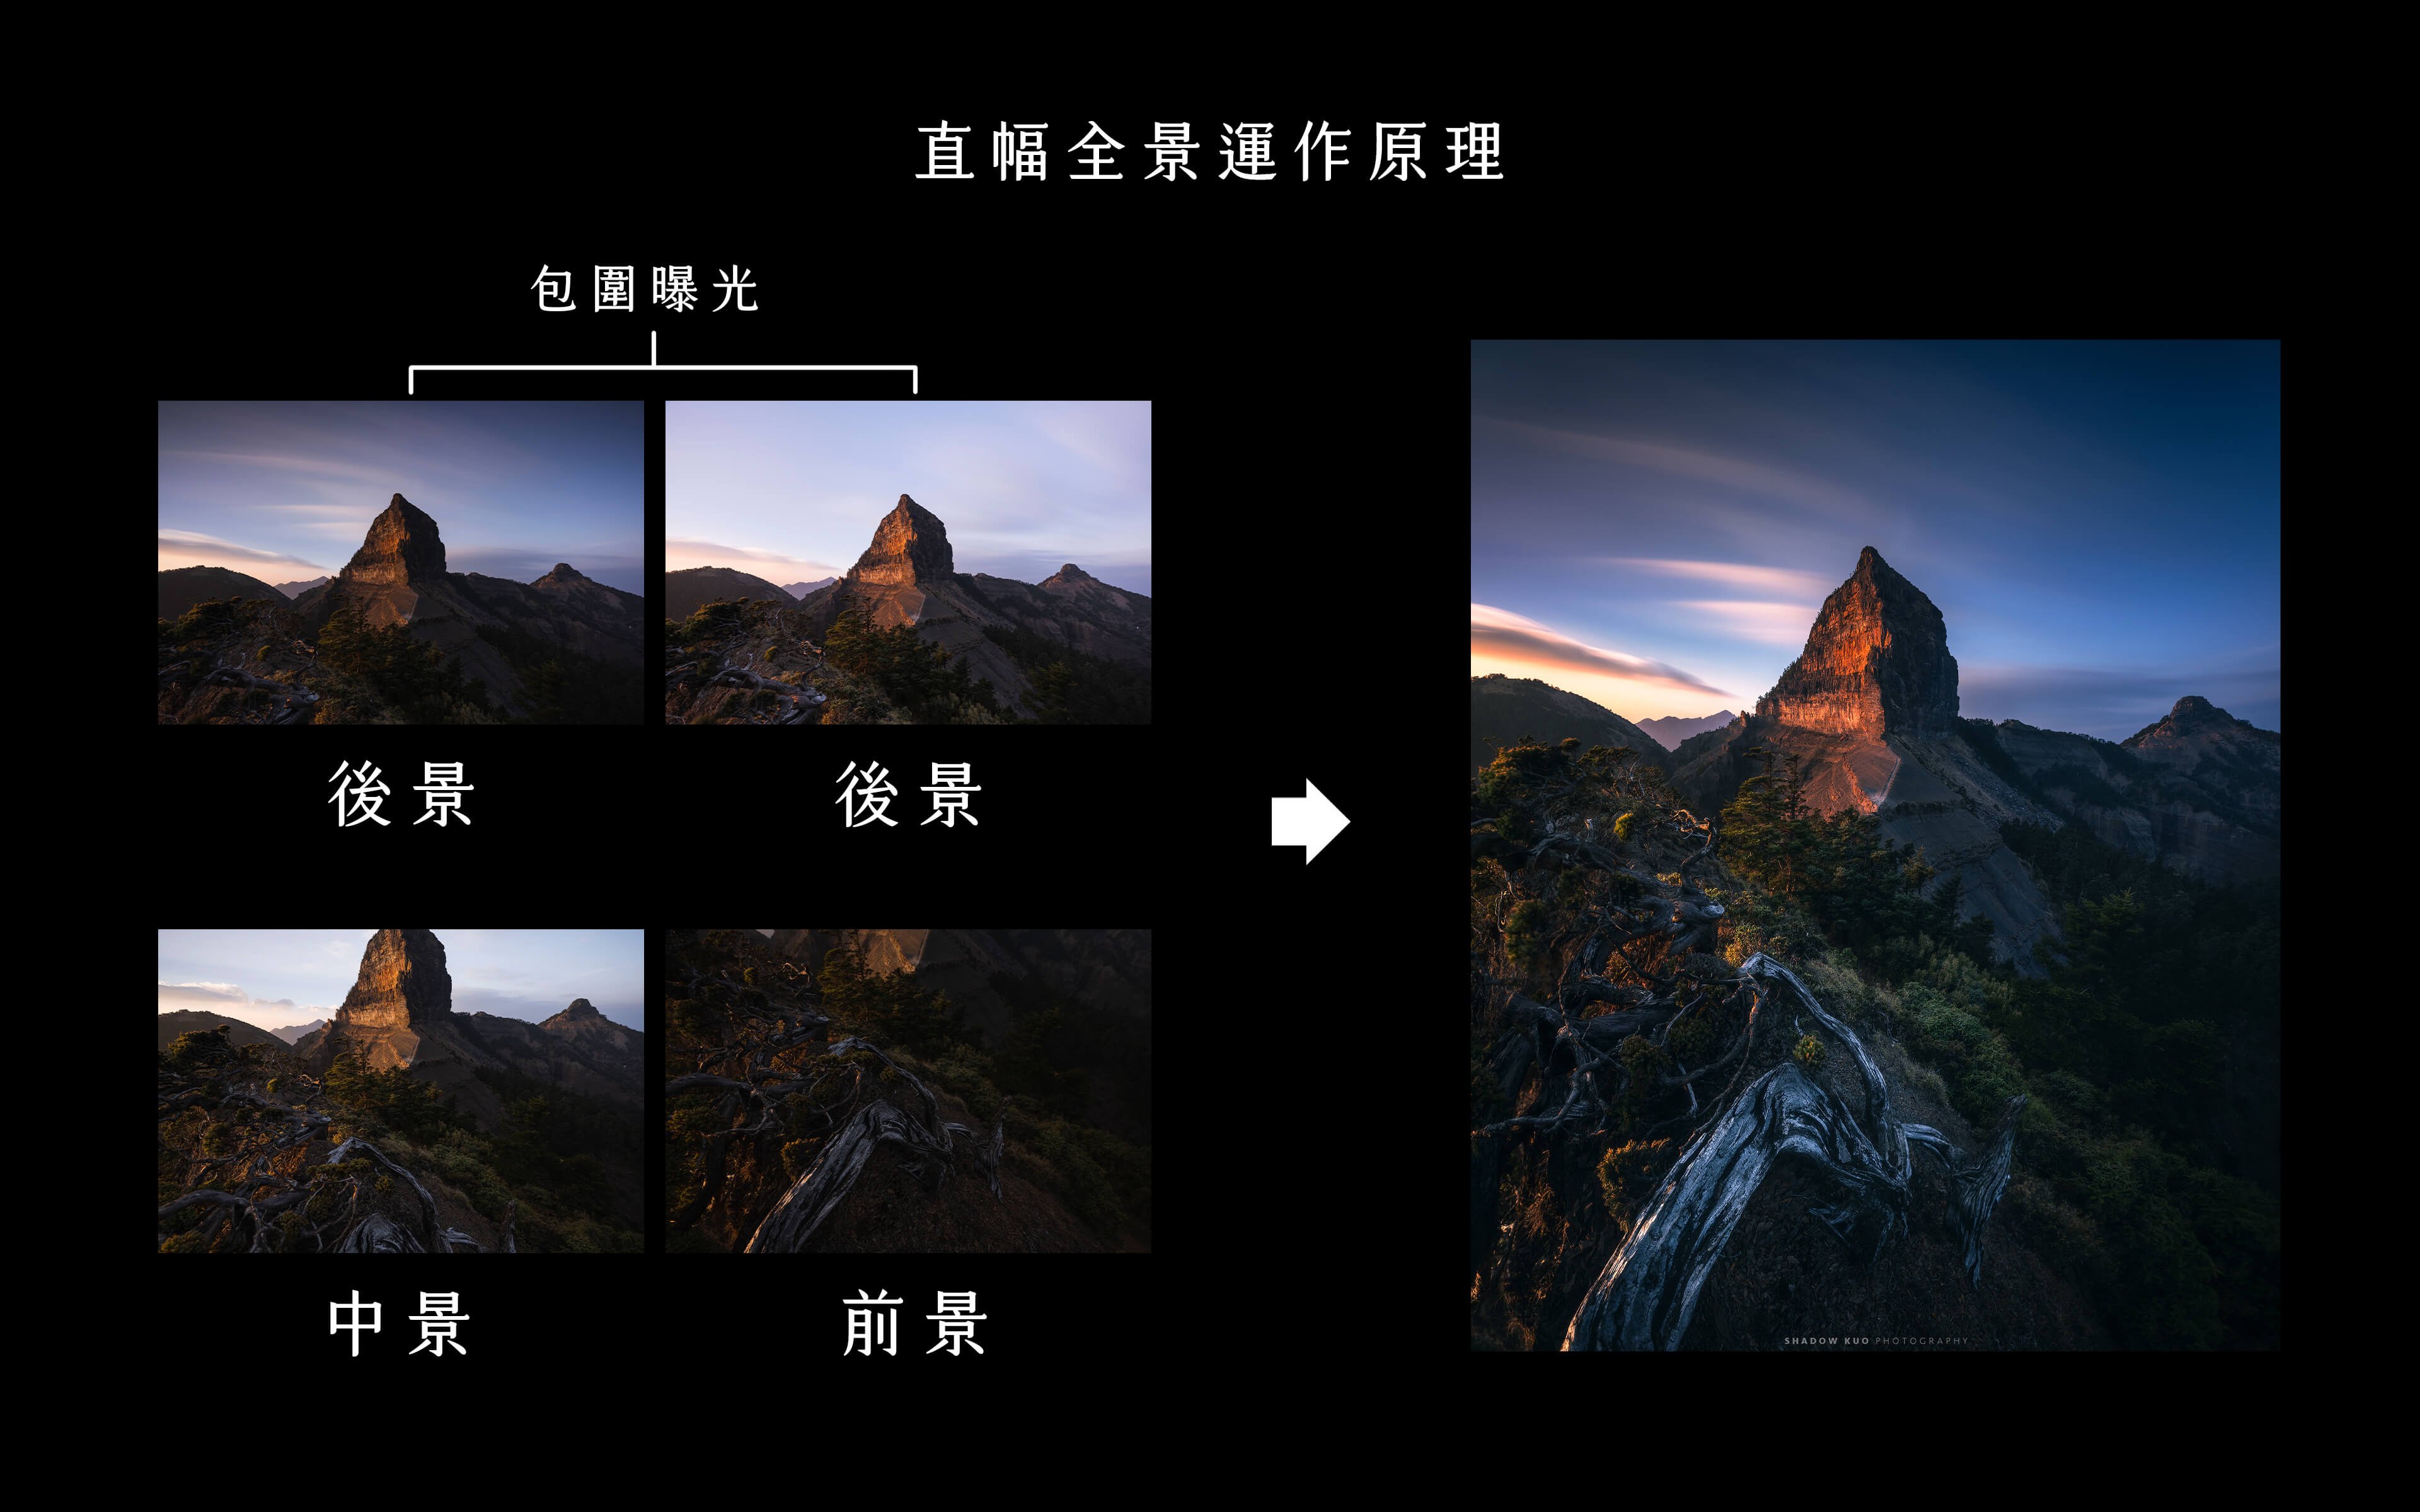 突破廣度限制的直幅全景風景攝影 - BenQ SW272U 專業攝影顯示器